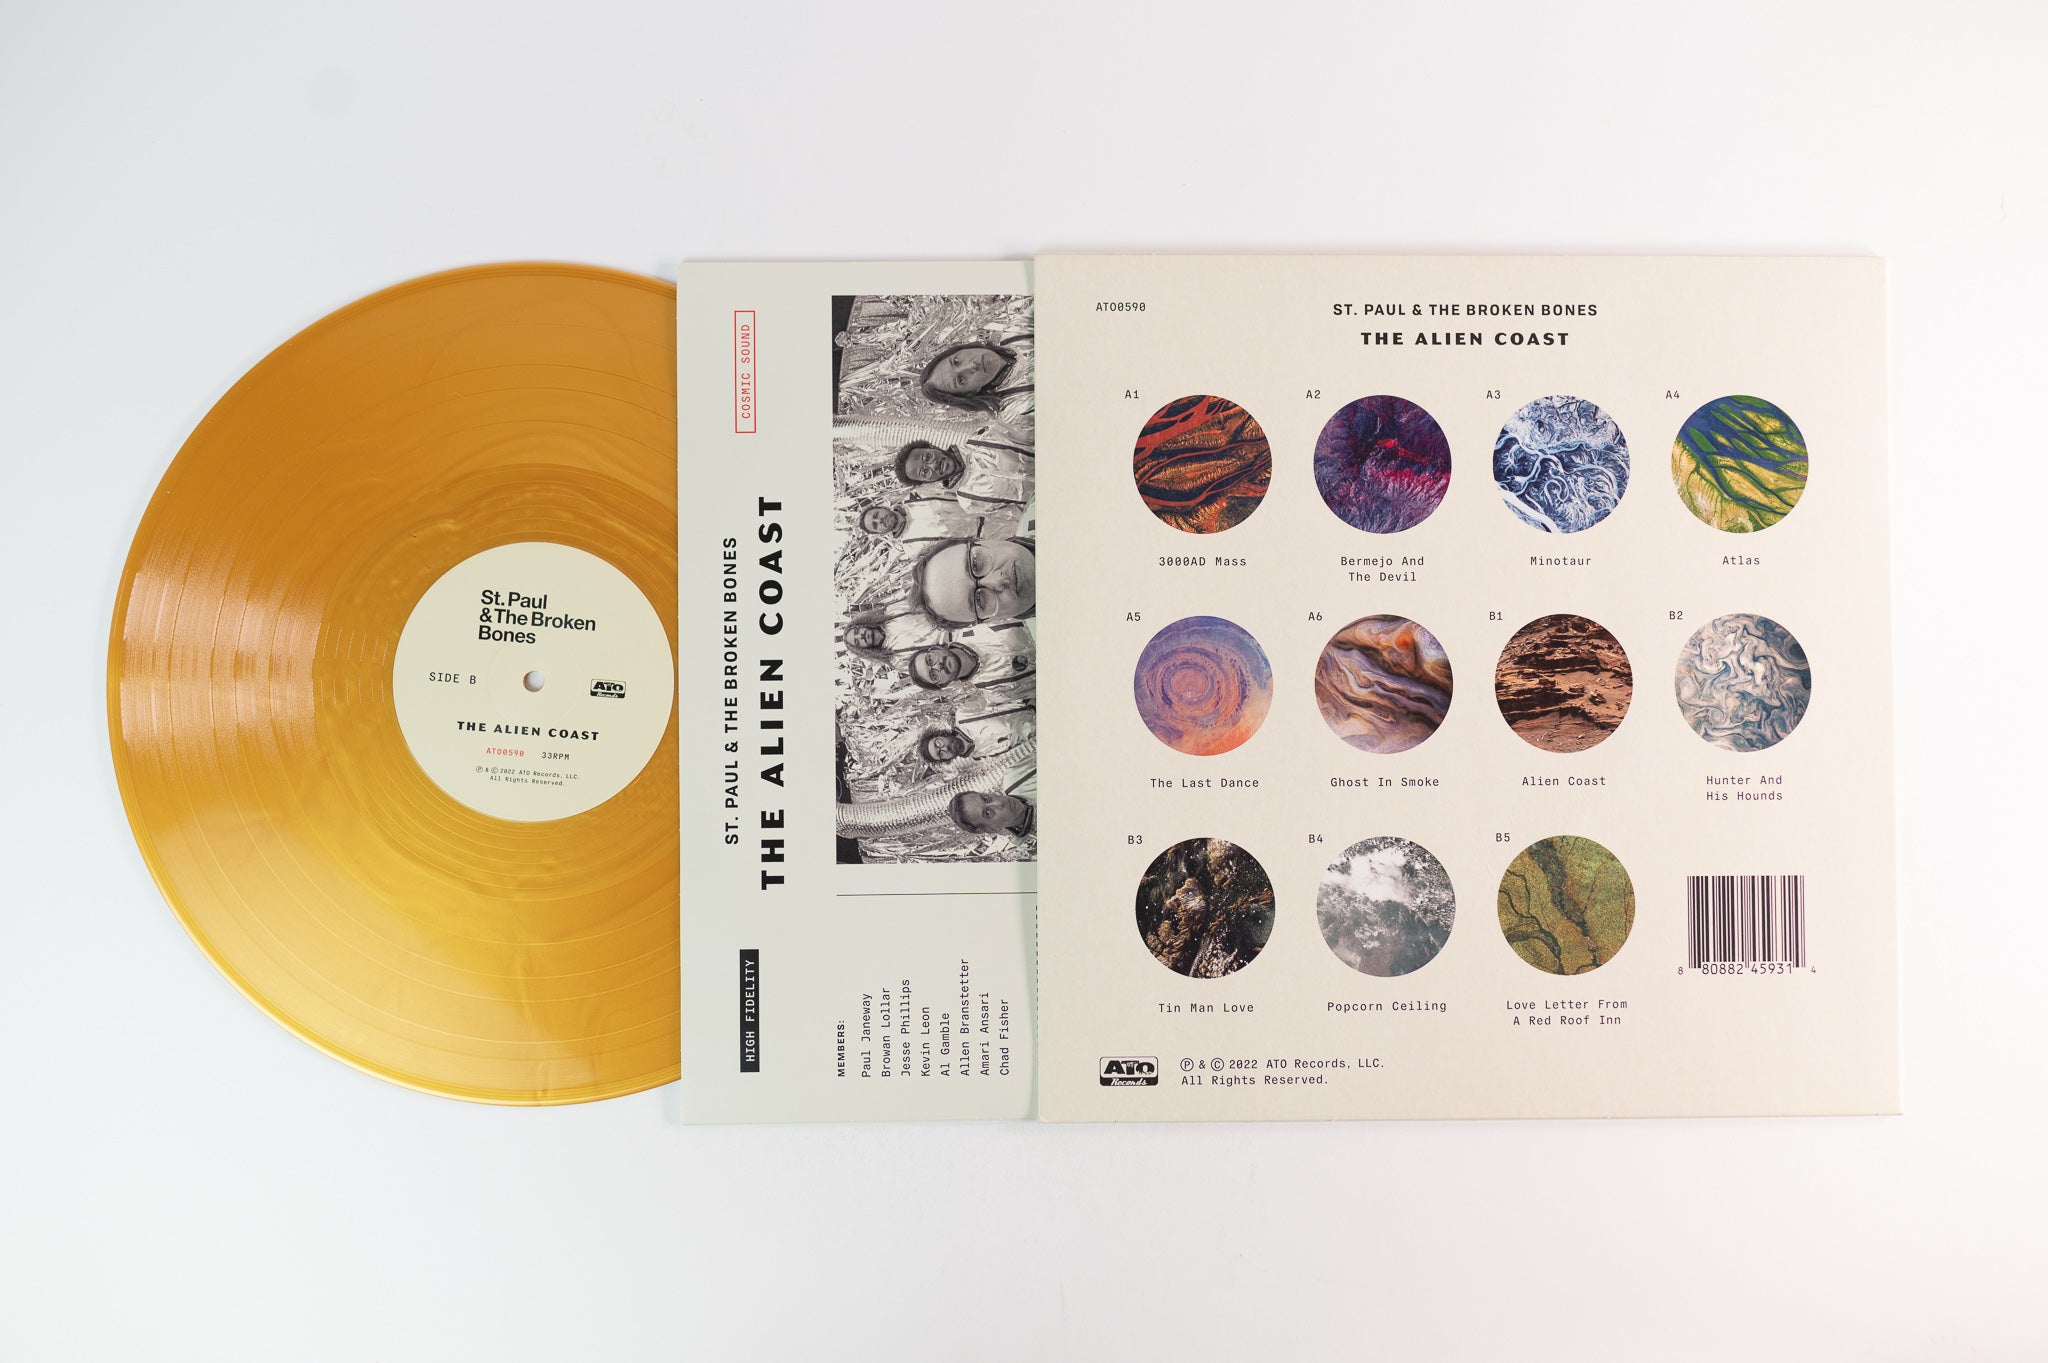 St. Paul & The Broken Bones - The Alien Coast on ATO Ltd Gold Vinyl